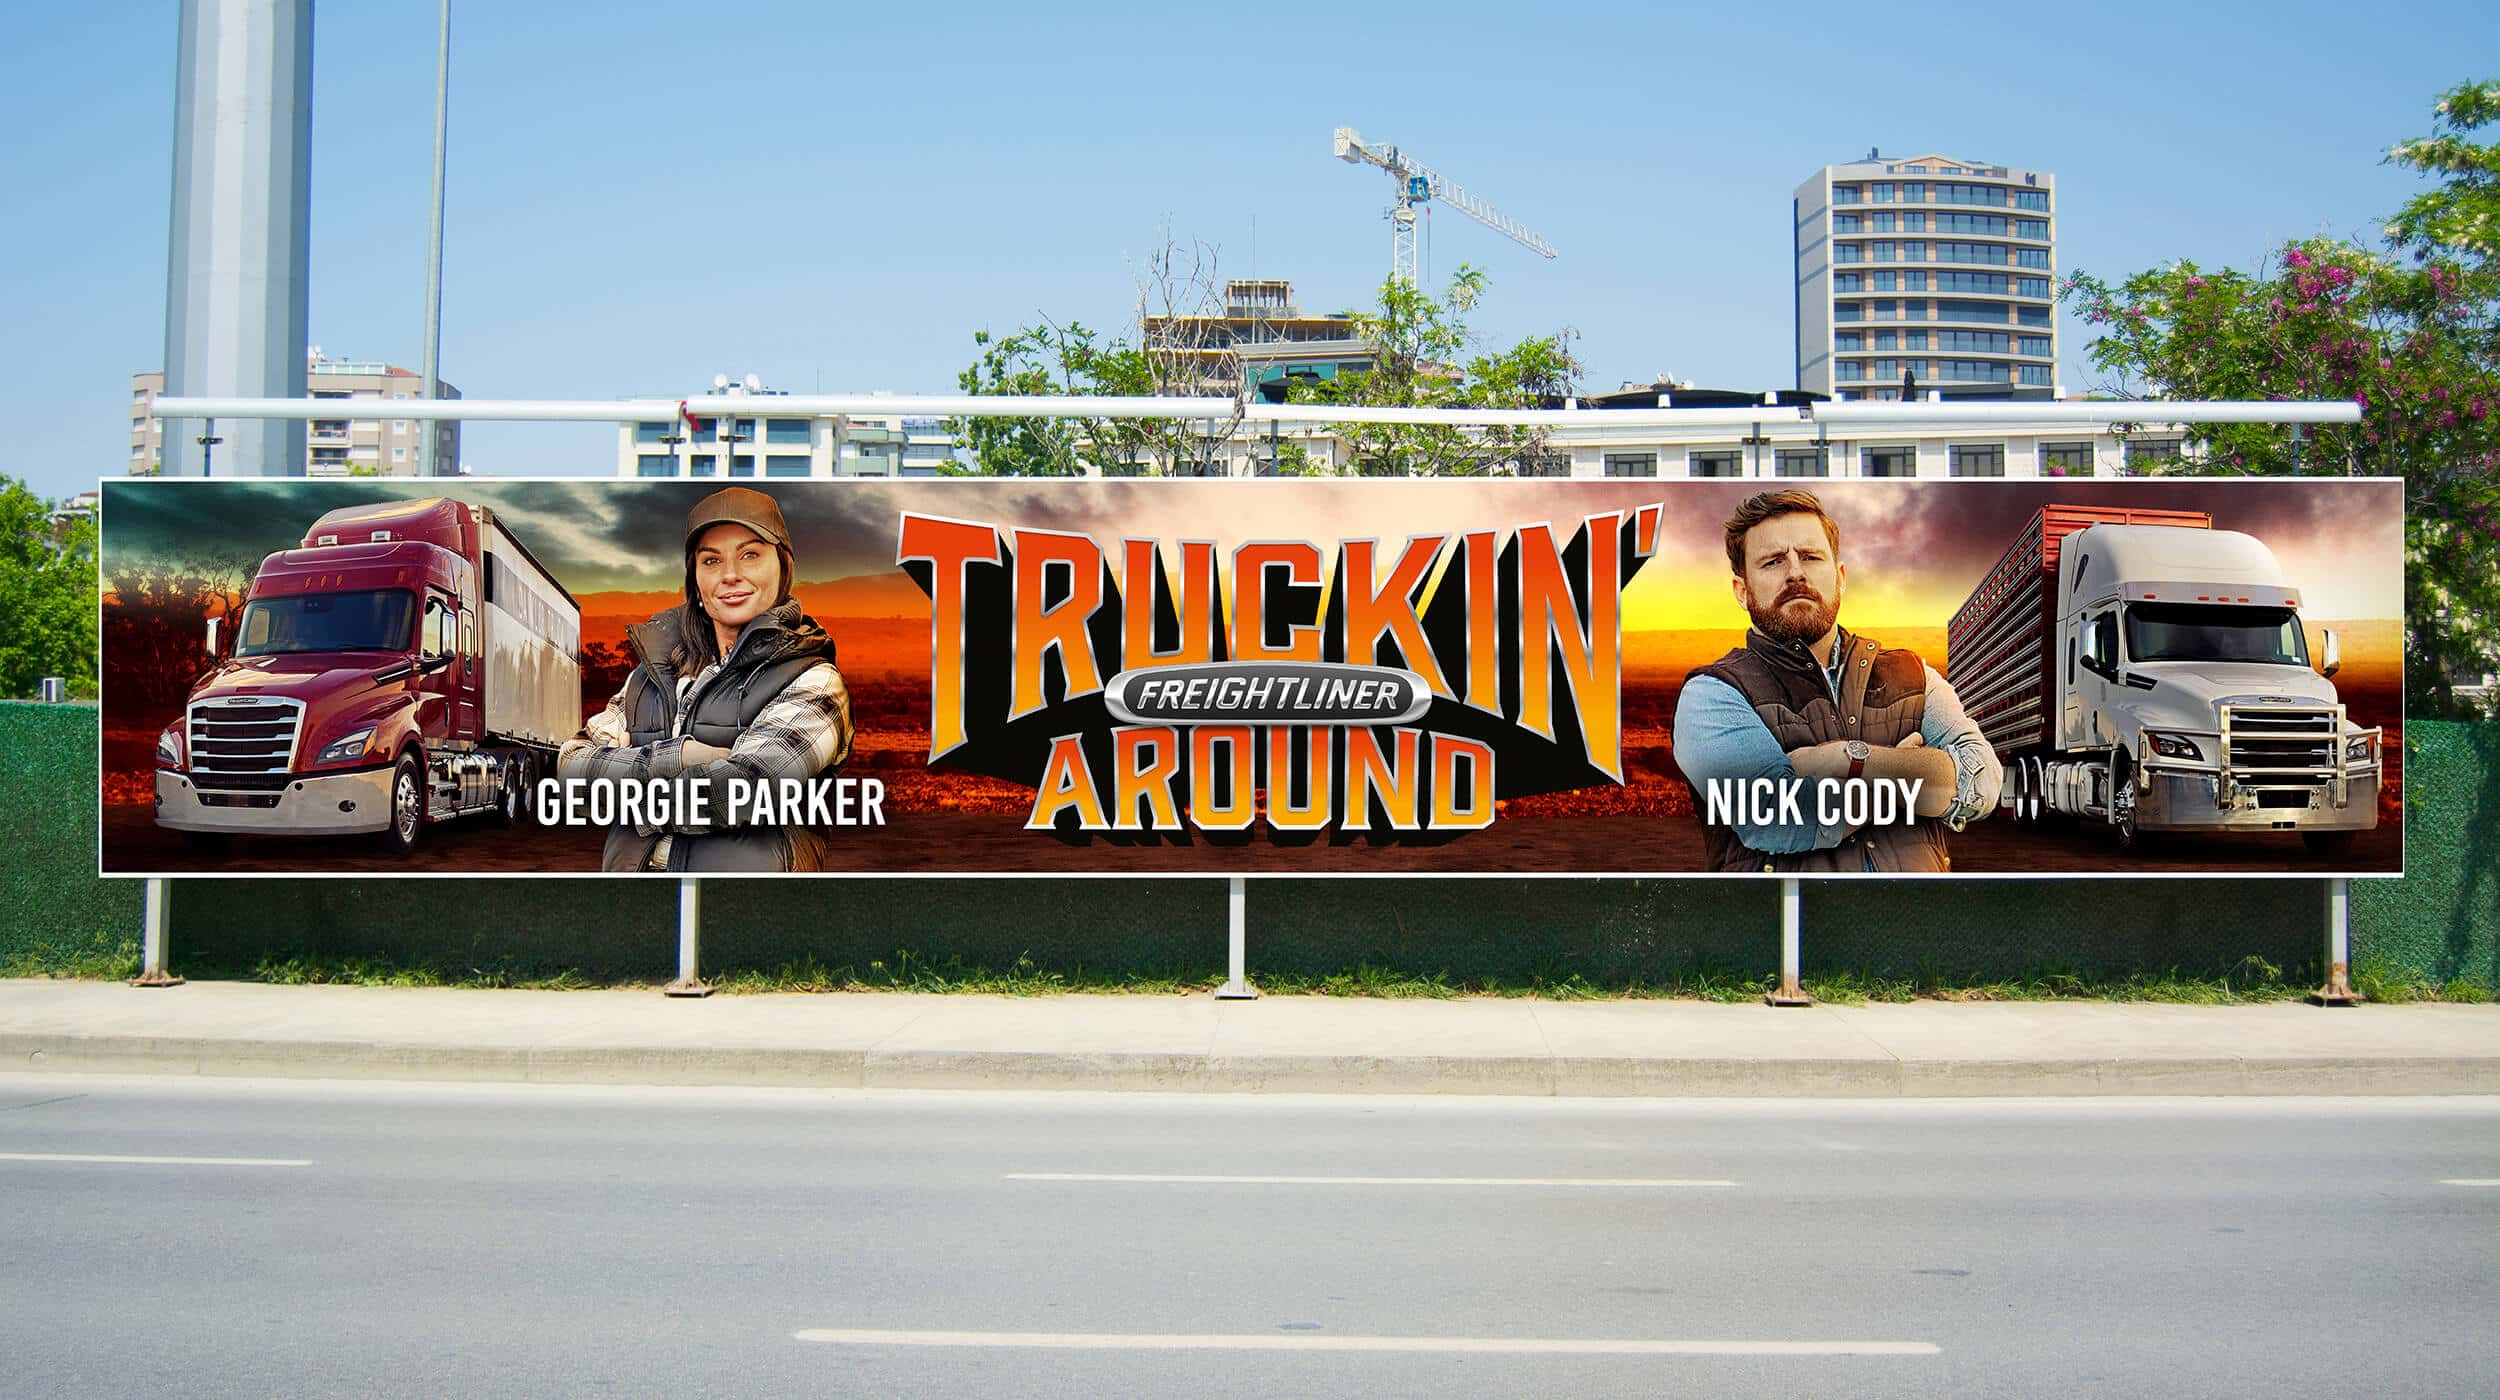 Akkomplice - Freightliner - Truckin Around - Ad Display